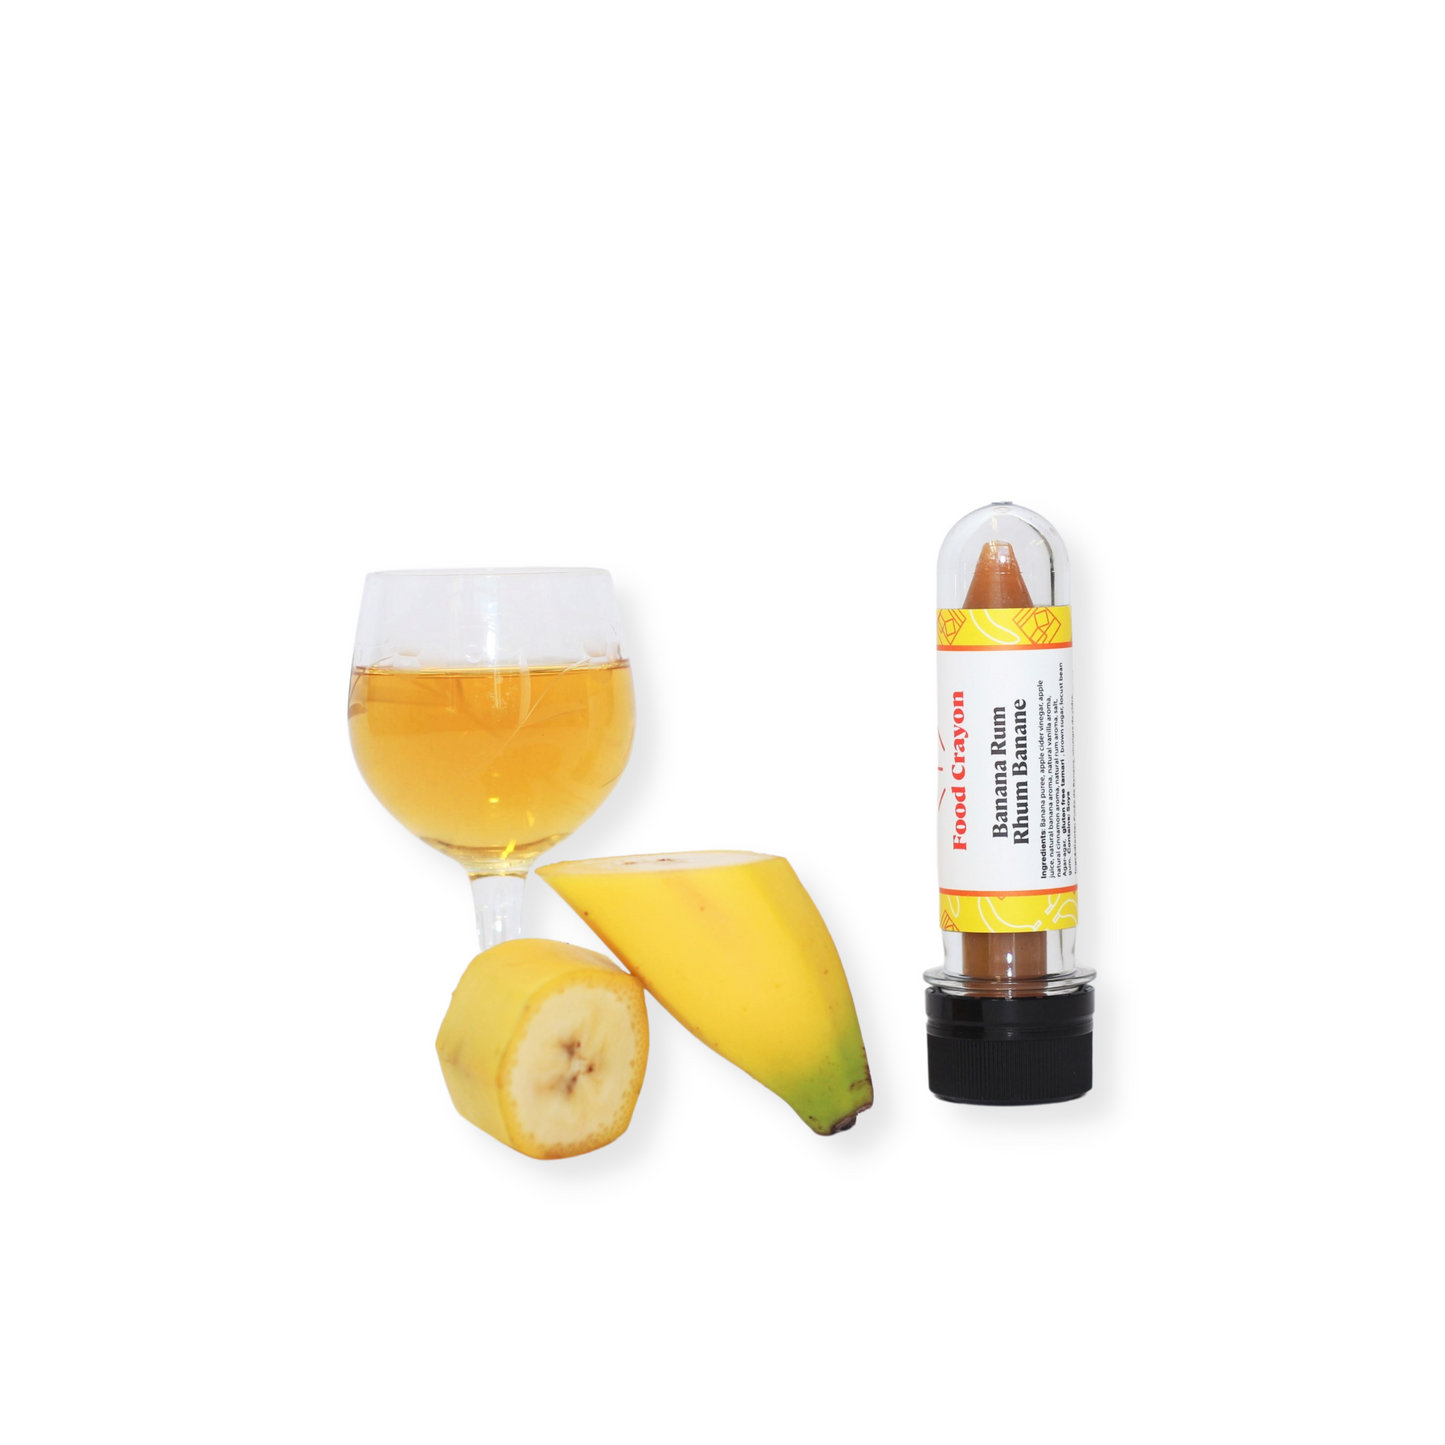 DUO EXOTIQUE | Rhum banane et Mangue épicée